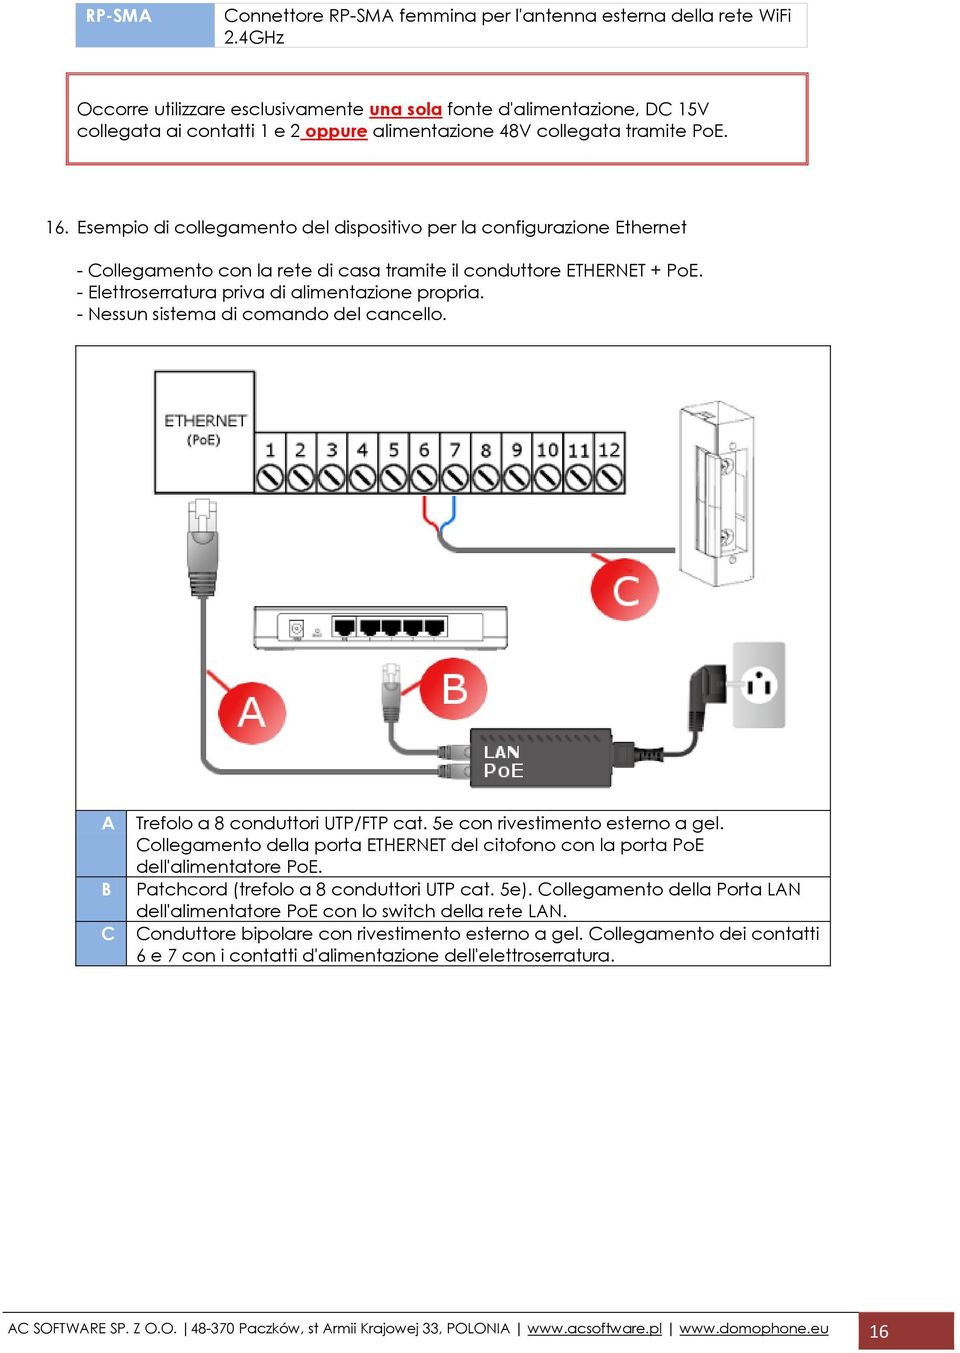 Esempio di collegamento del dispositivo per la configurazione Ethernet - Collegamento con la rete di casa tramite il conduttore ETHERNET + PoE. - Elettroserratura priva di alimentazione propria.